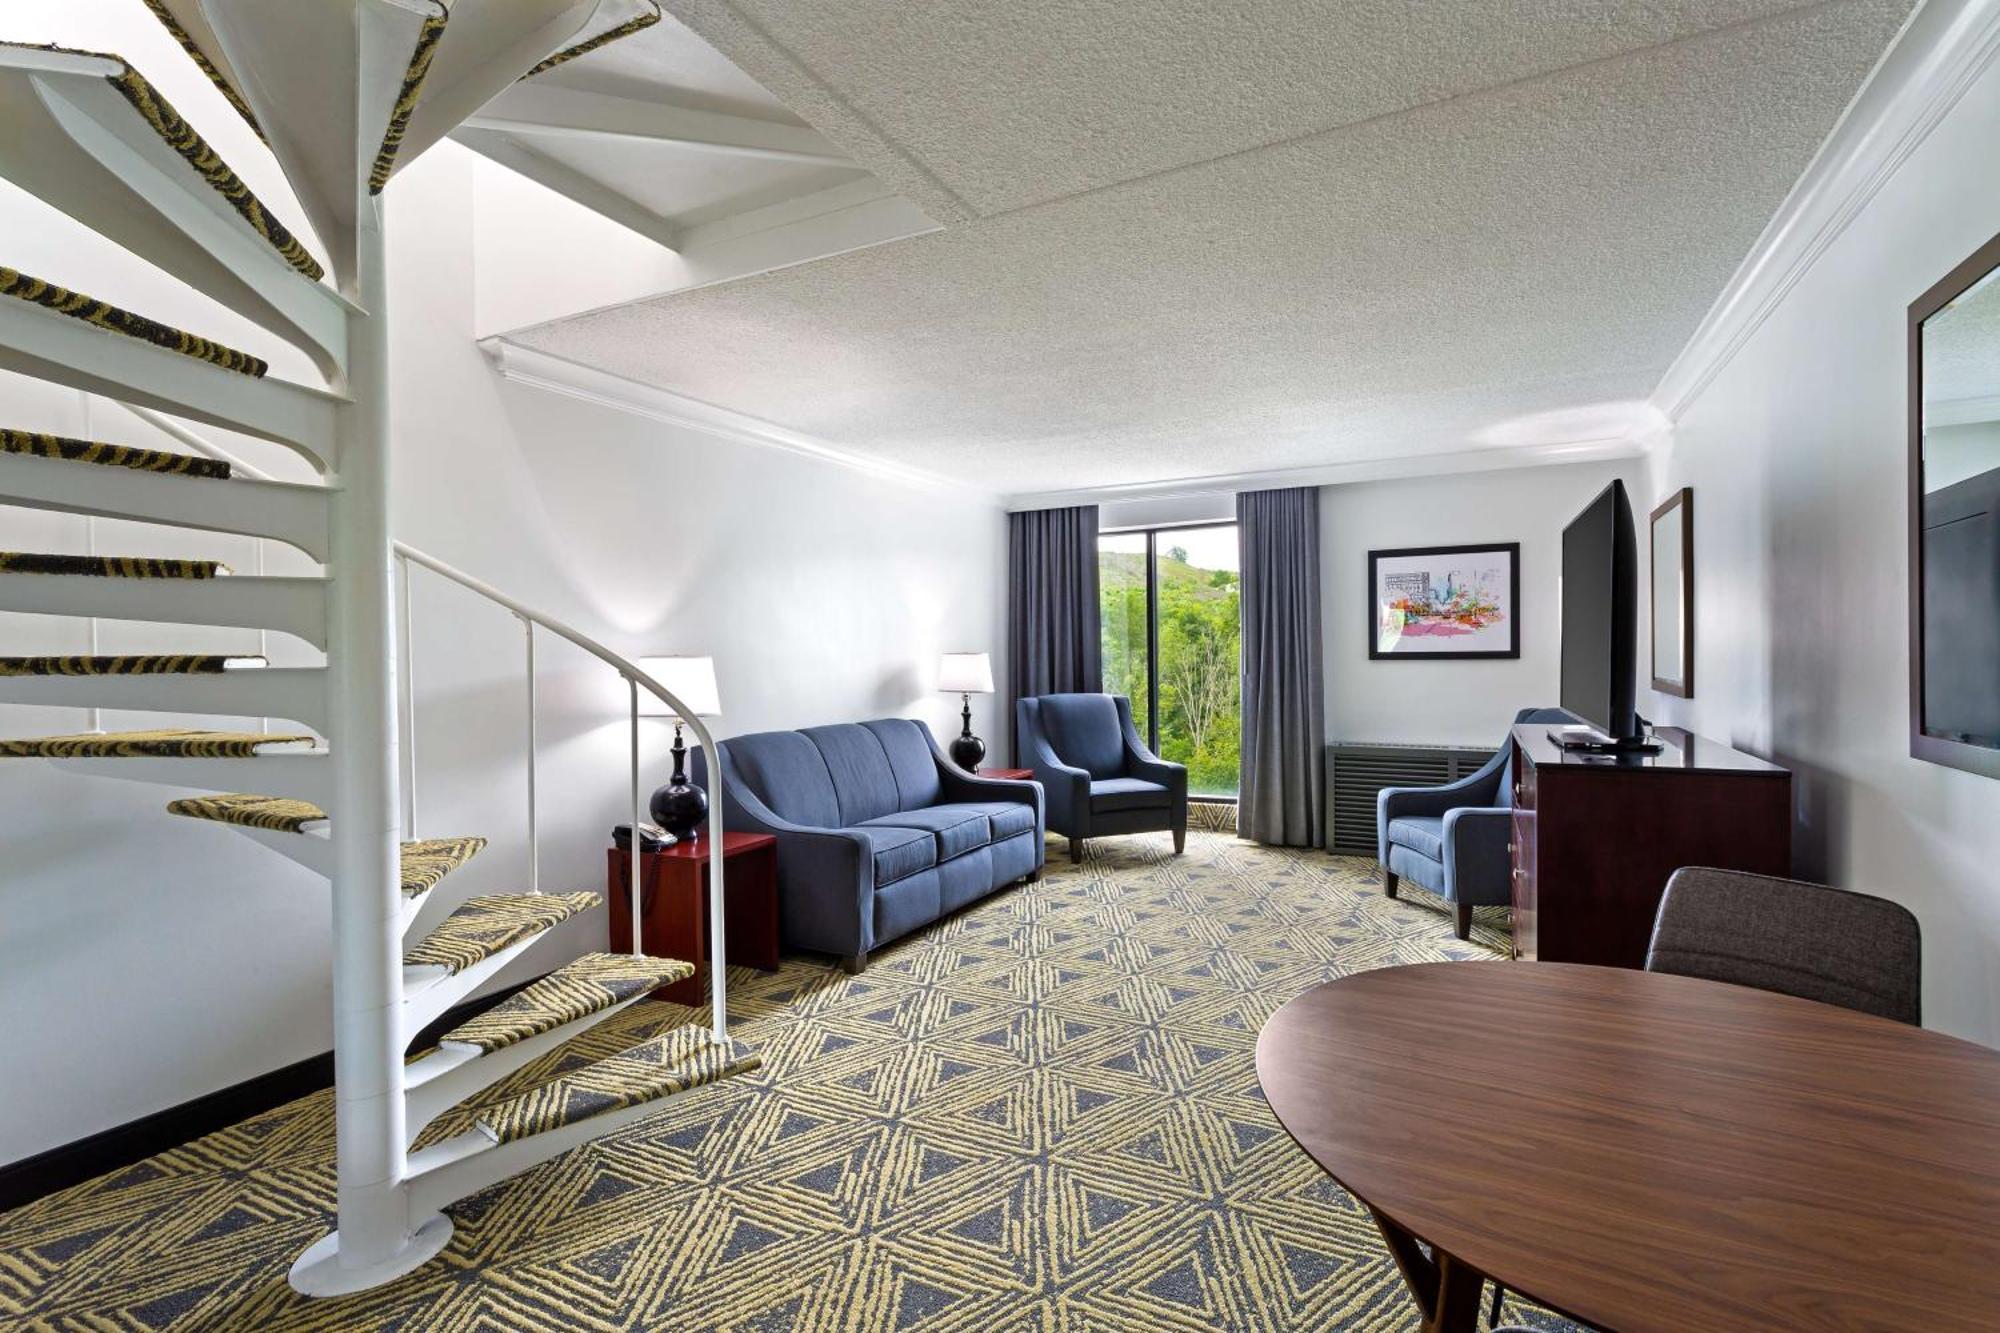 Doubletree By Hilton Pittsburgh - Meadow Lands Ξενοδοχείο Ουάσινγκτον Εξωτερικό φωτογραφία